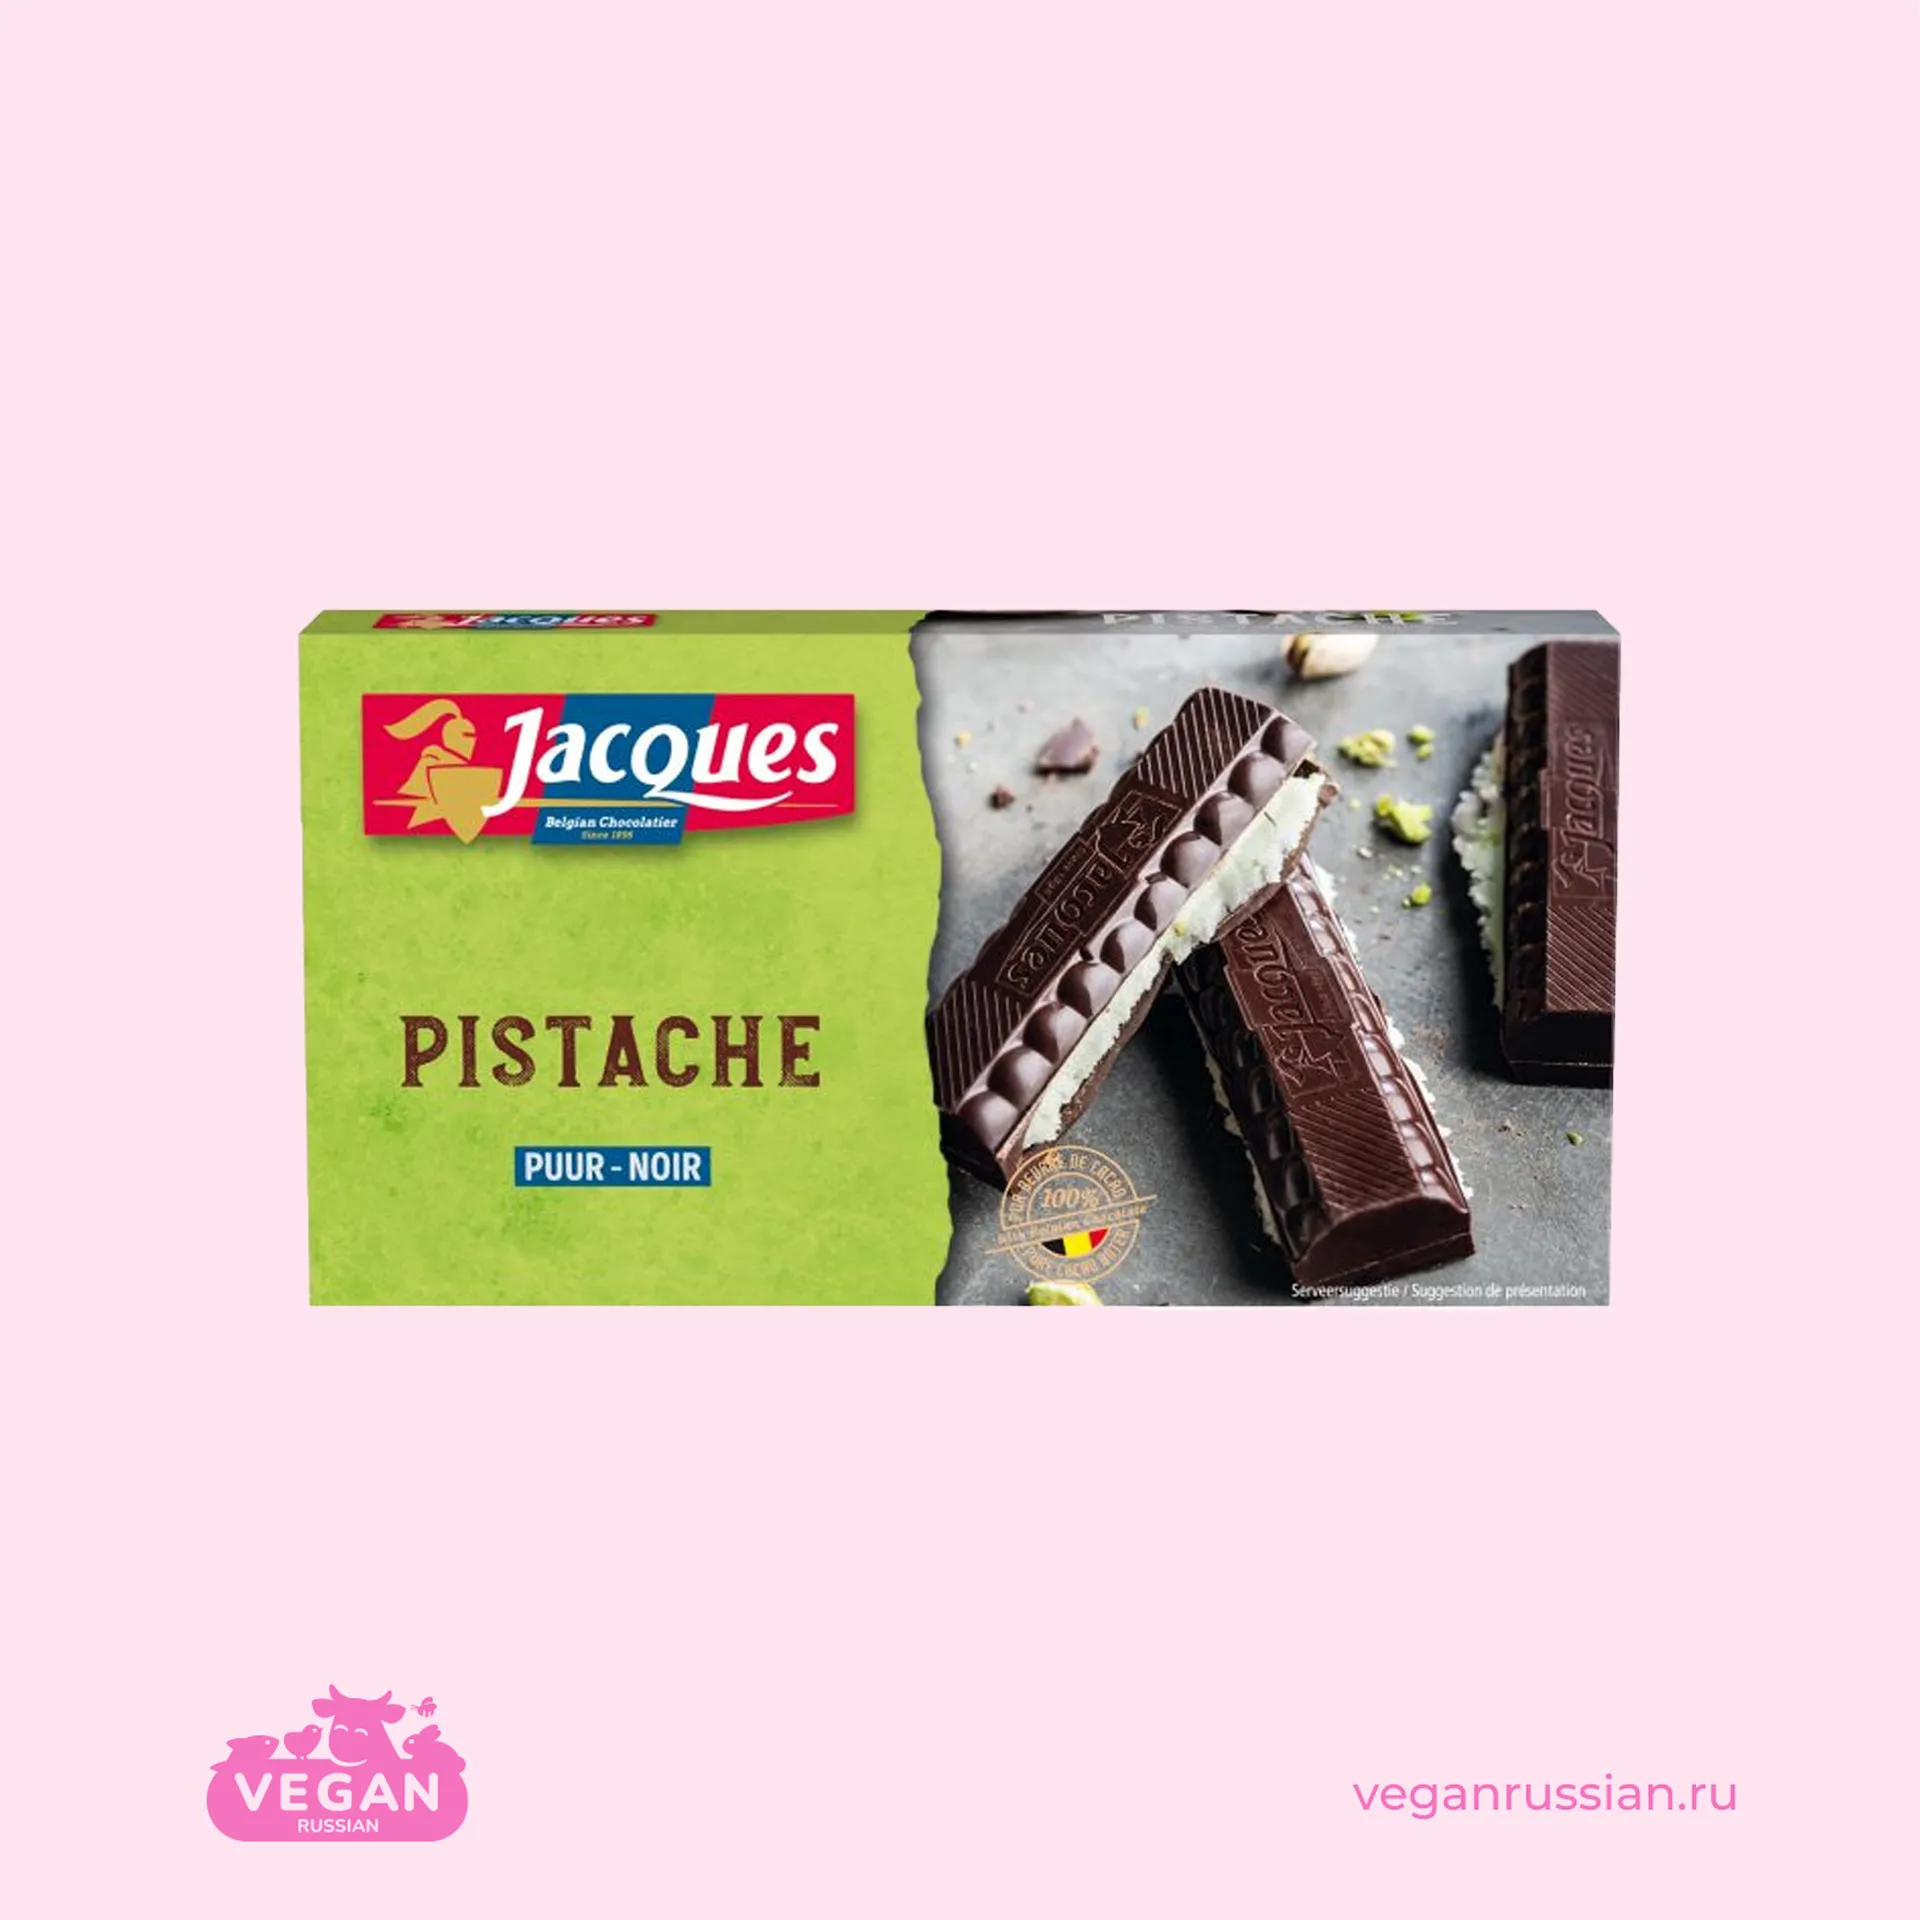 Шоколад тёмный с фисташковой начинкой Jacques Pistache 200 г